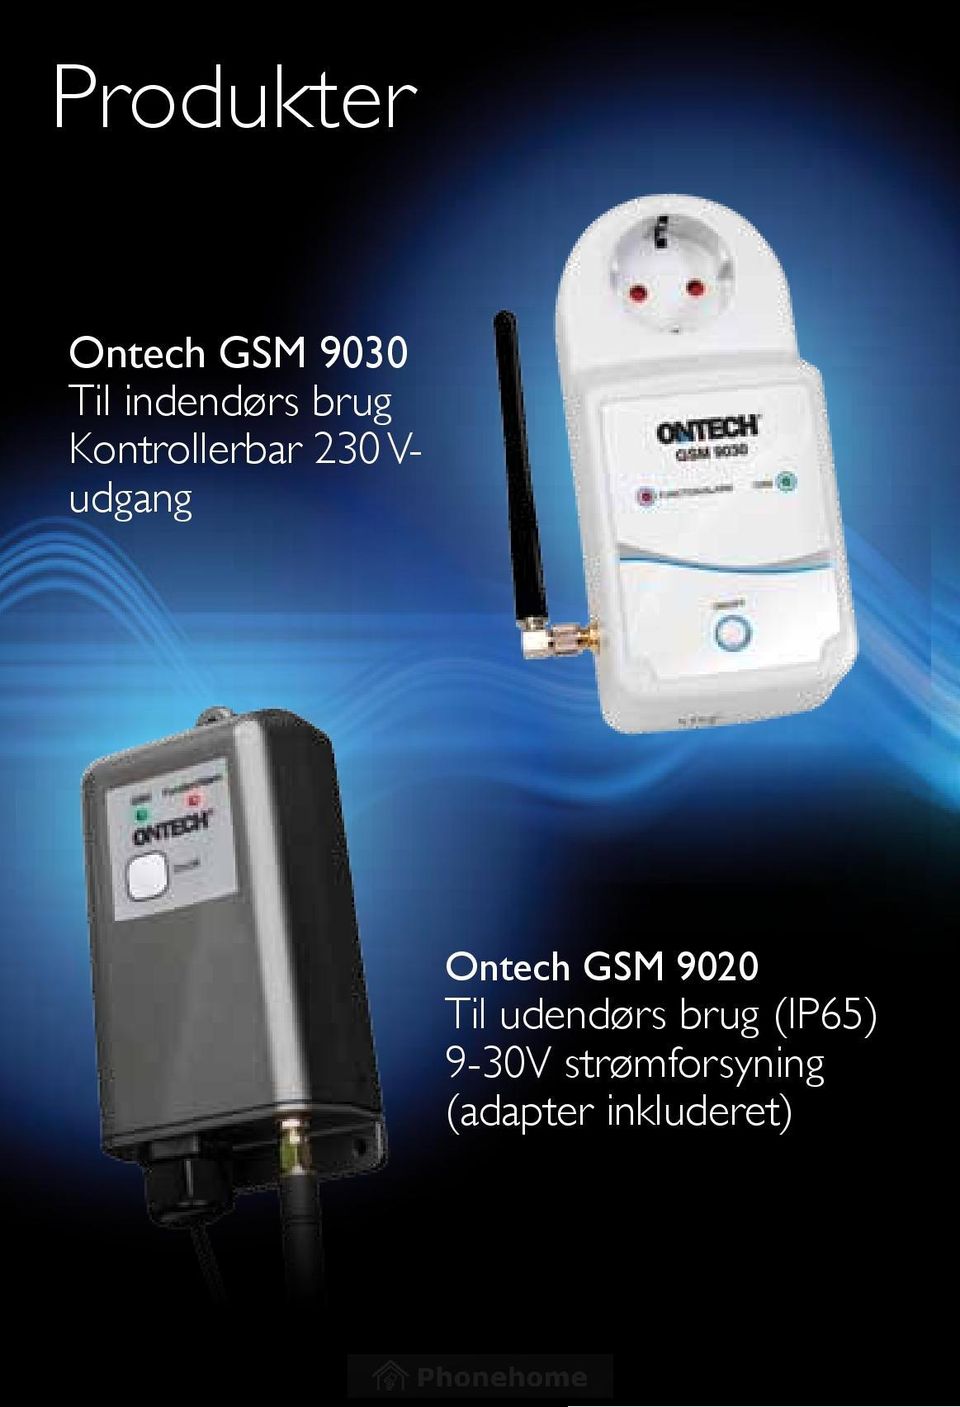 udgang Ontech GSM 9020 Til udendørs